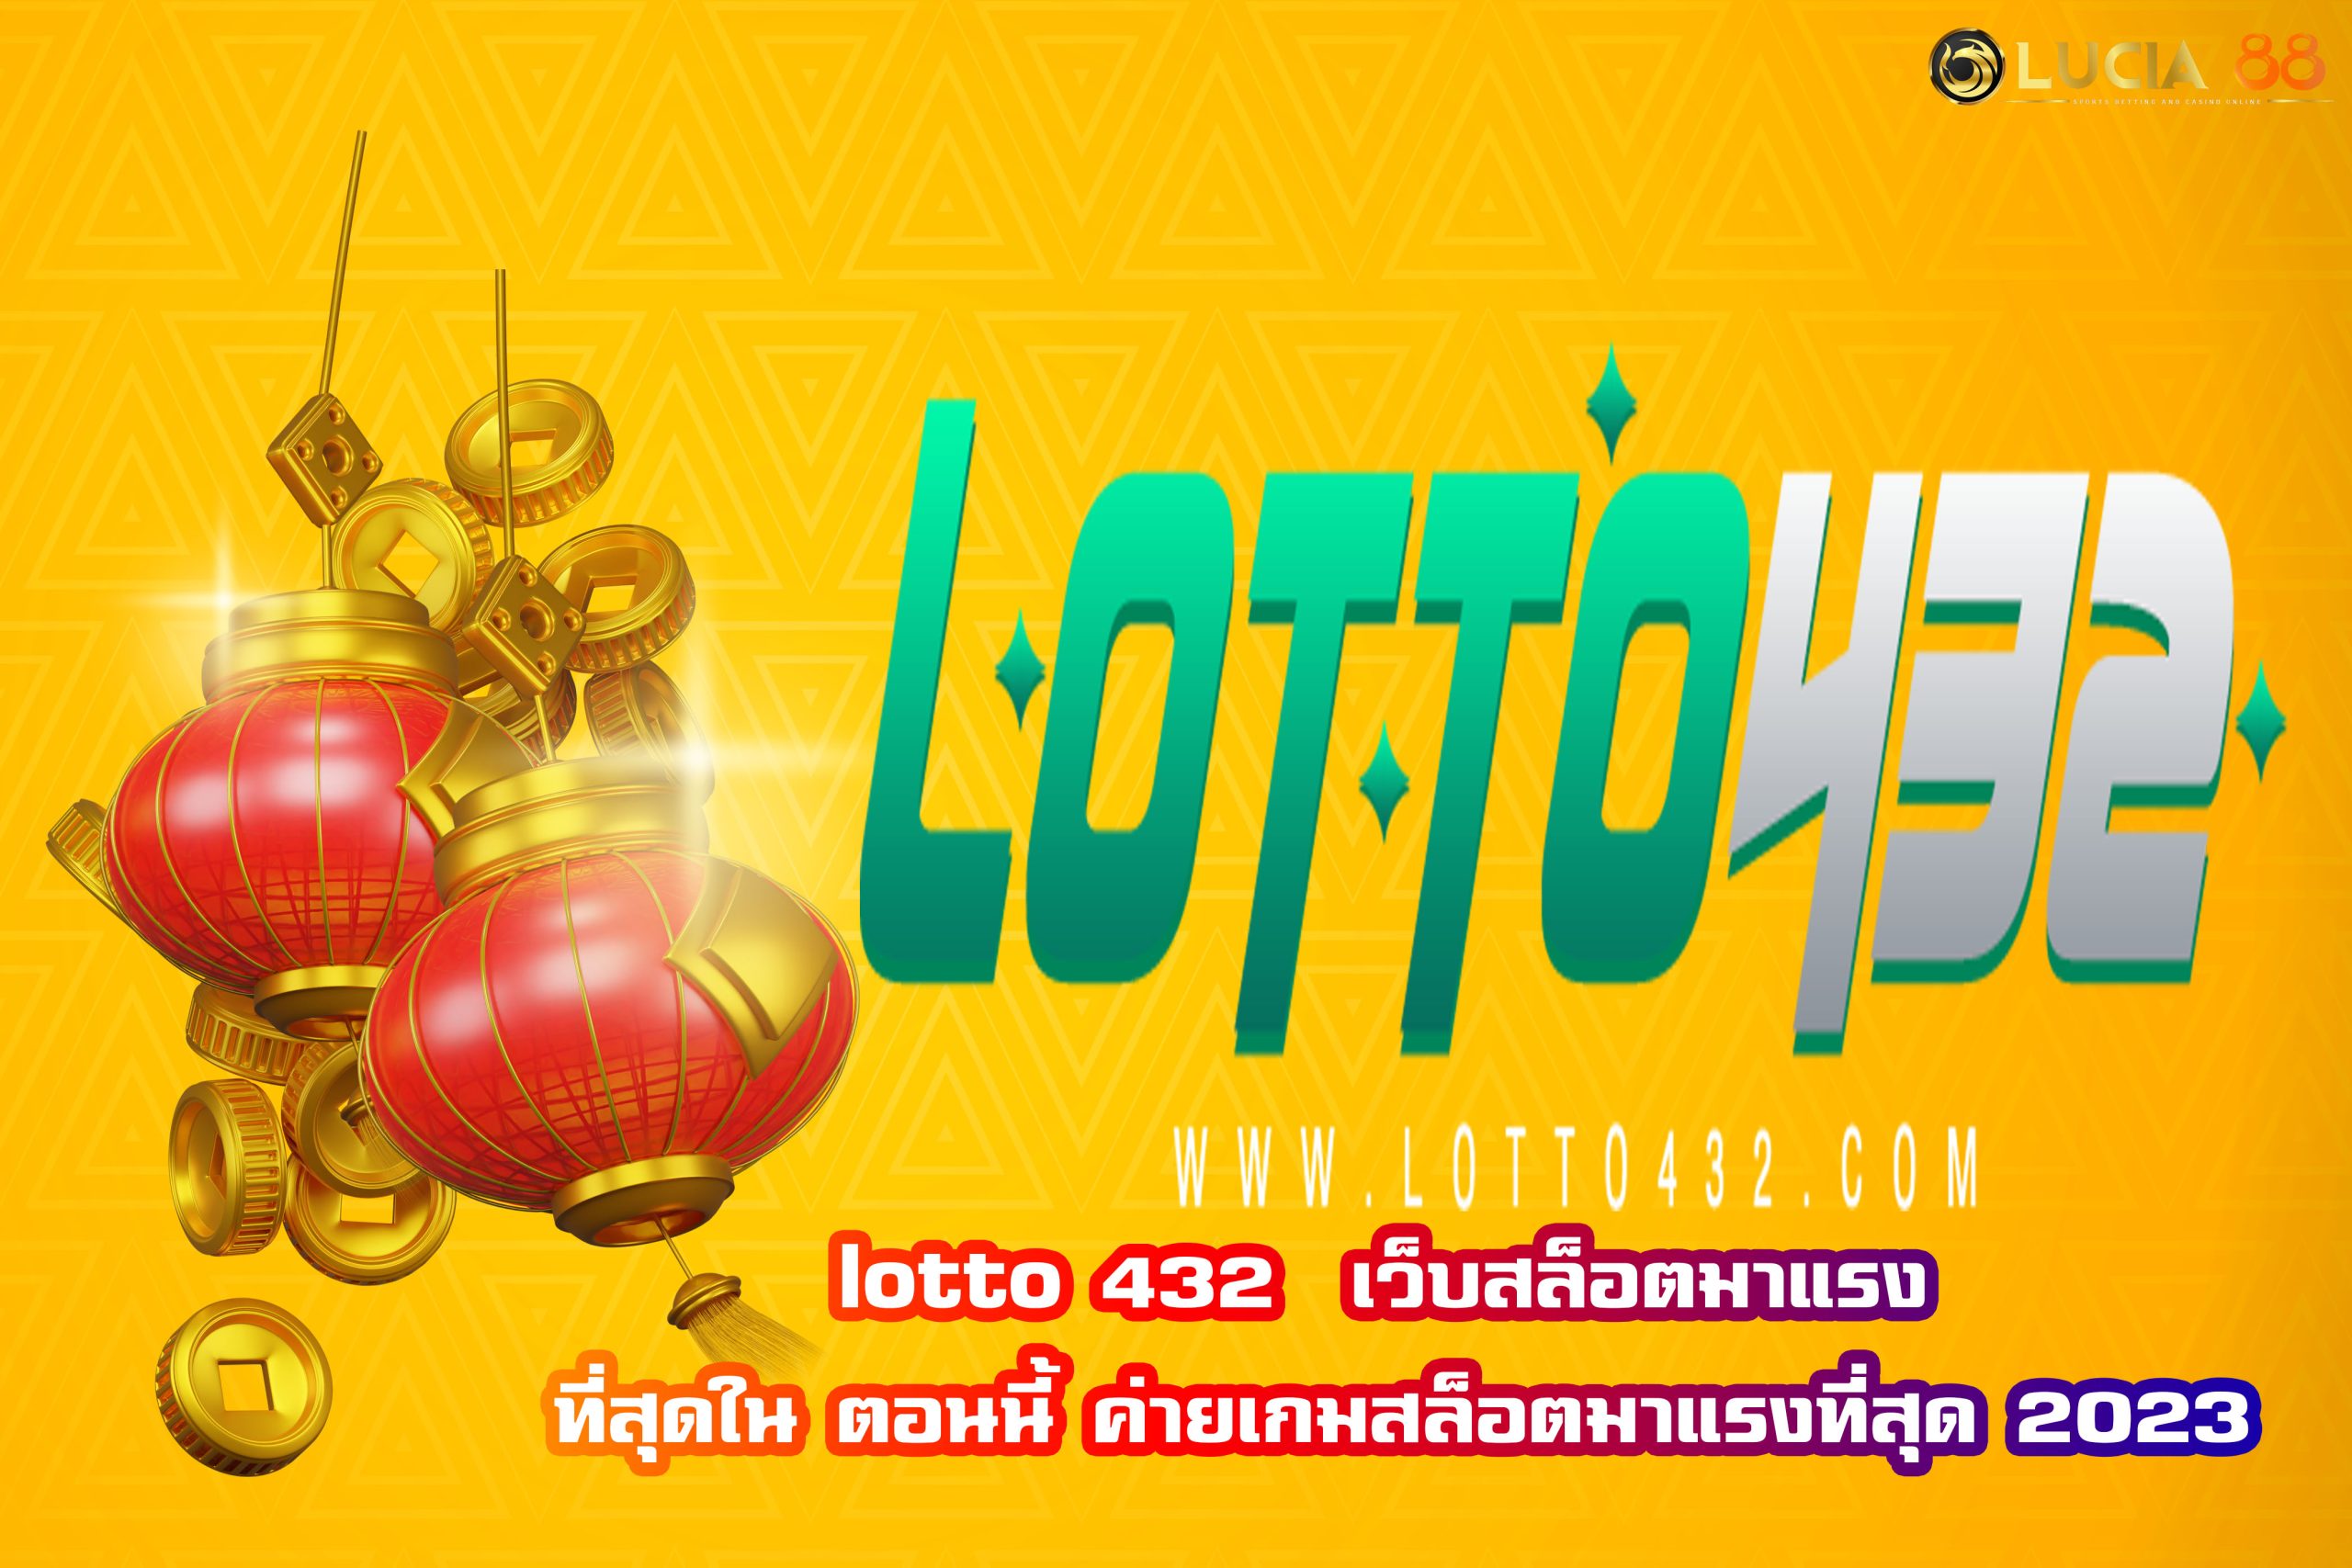 lotto 432  เว็บสล็อตมาแรง ที่สุดใน ตอนนี้ ค่ายเกมสล็อตมาแรงที่สุด 2023